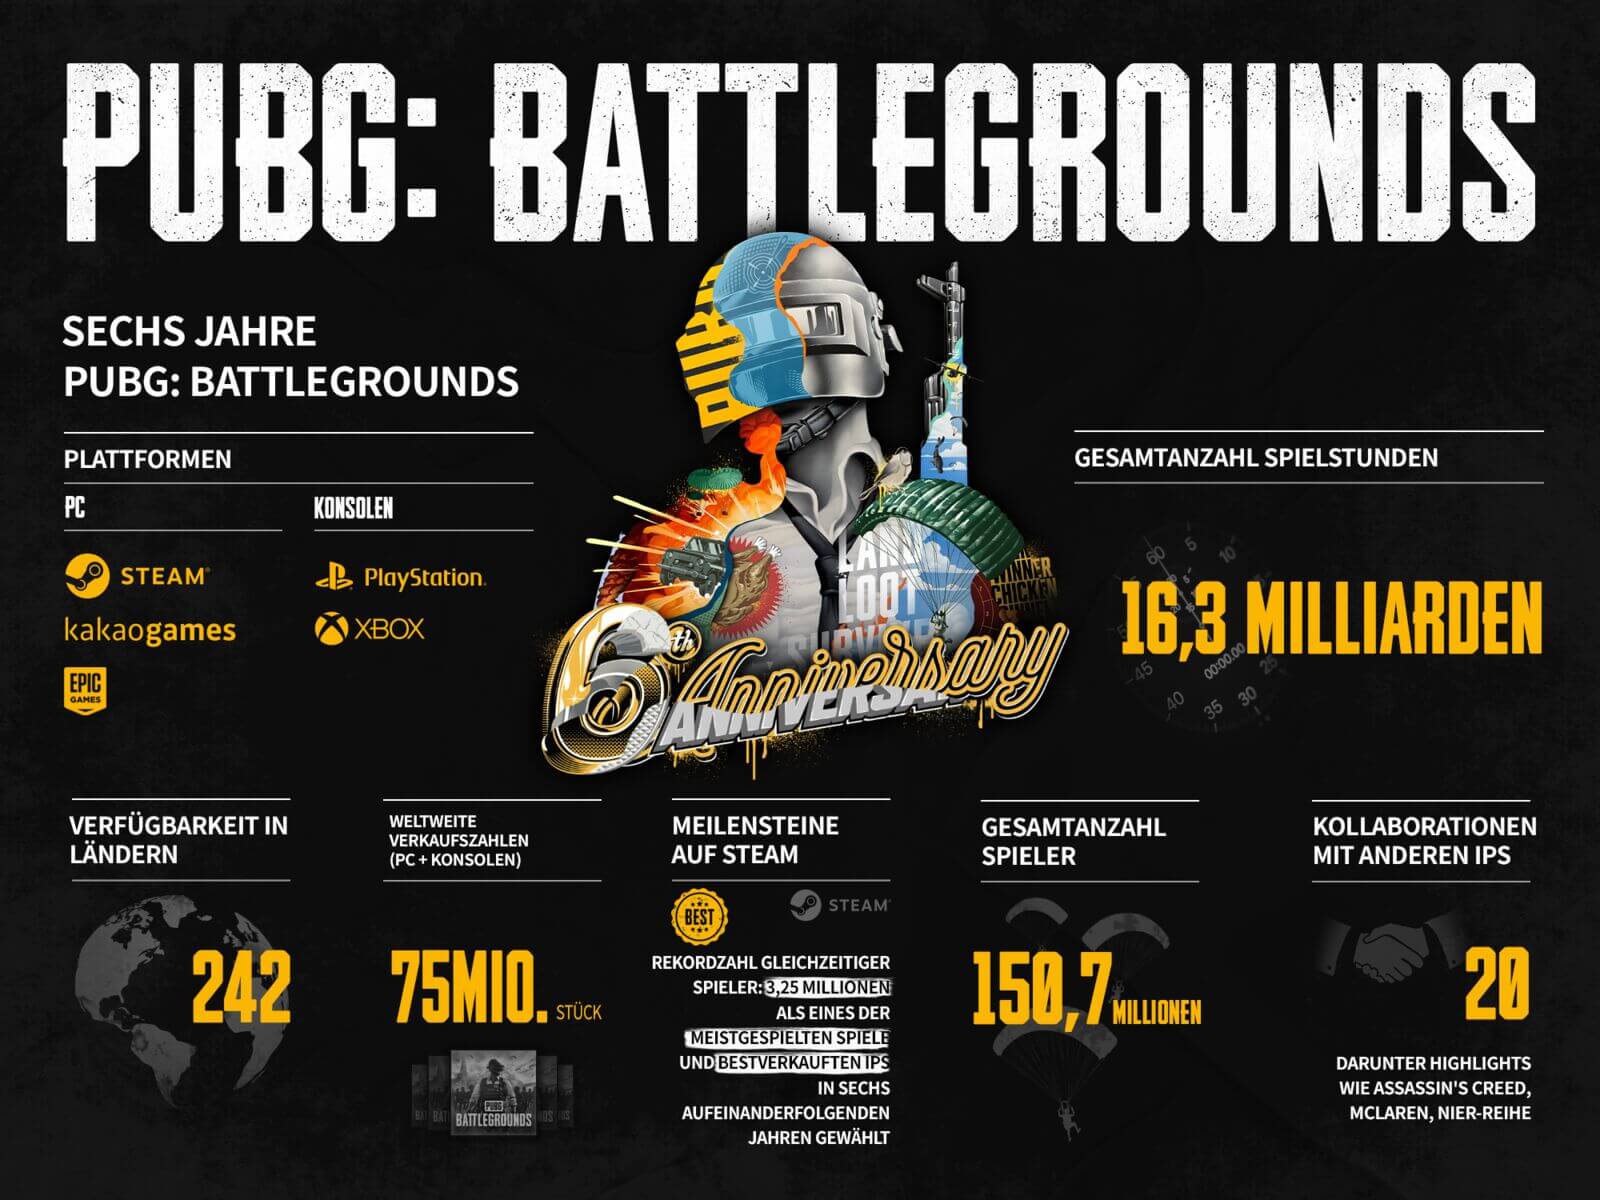 de pubg battlegroundds 6th anniversary infographic